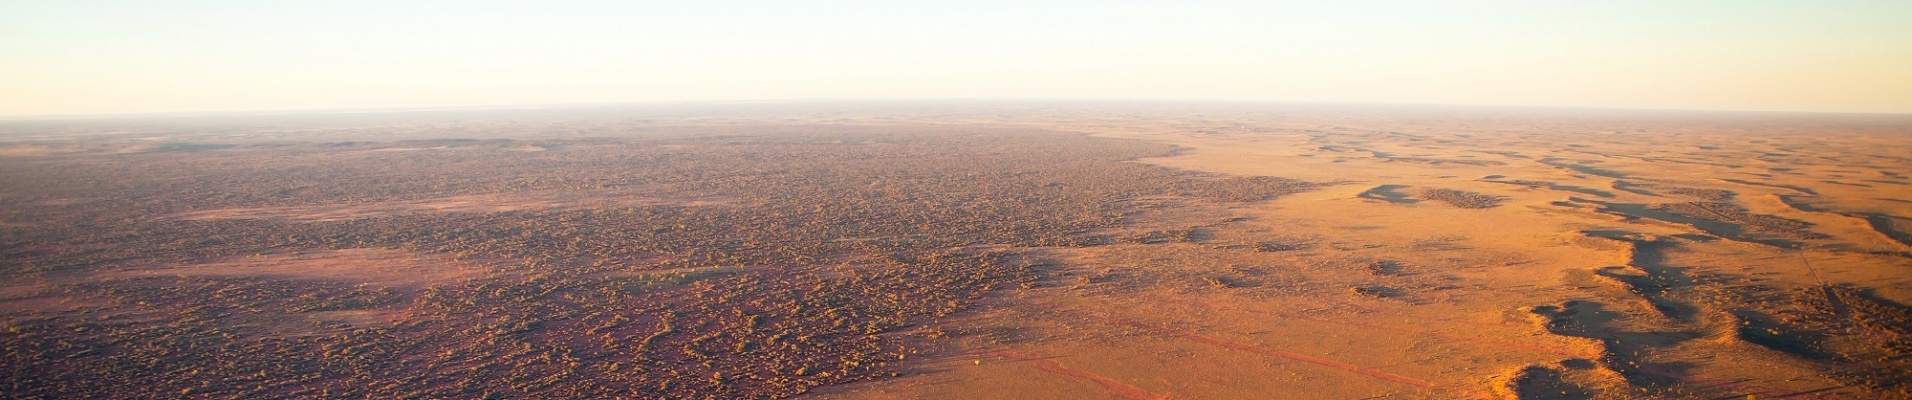 vue aérienne sur les terres rouges de l'outback australien